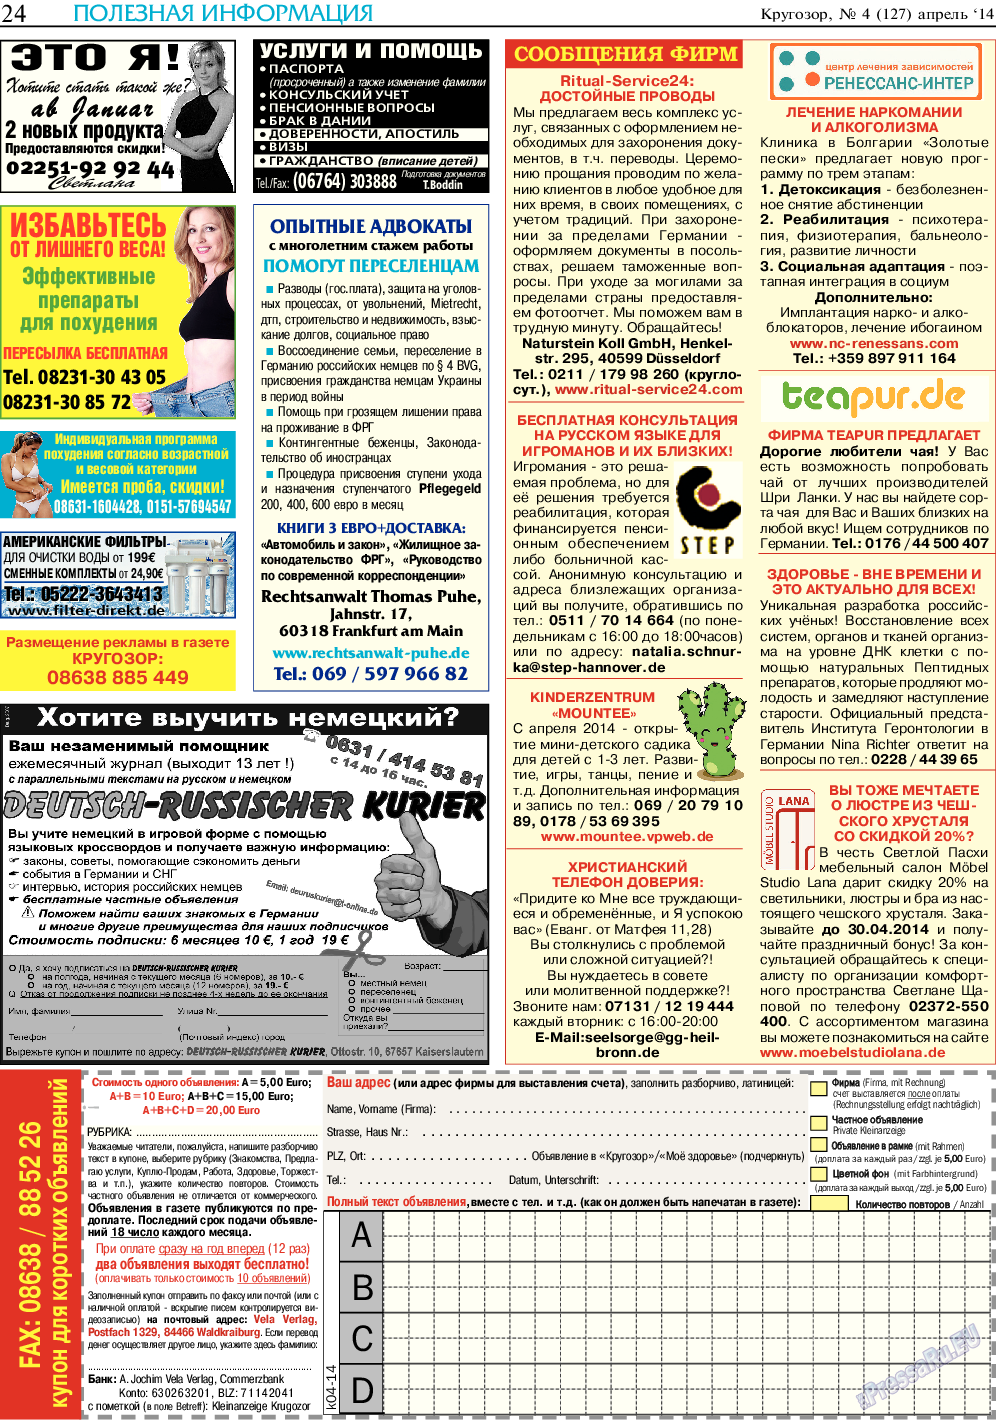 Кругозор, газета. 2014 №4 стр.24